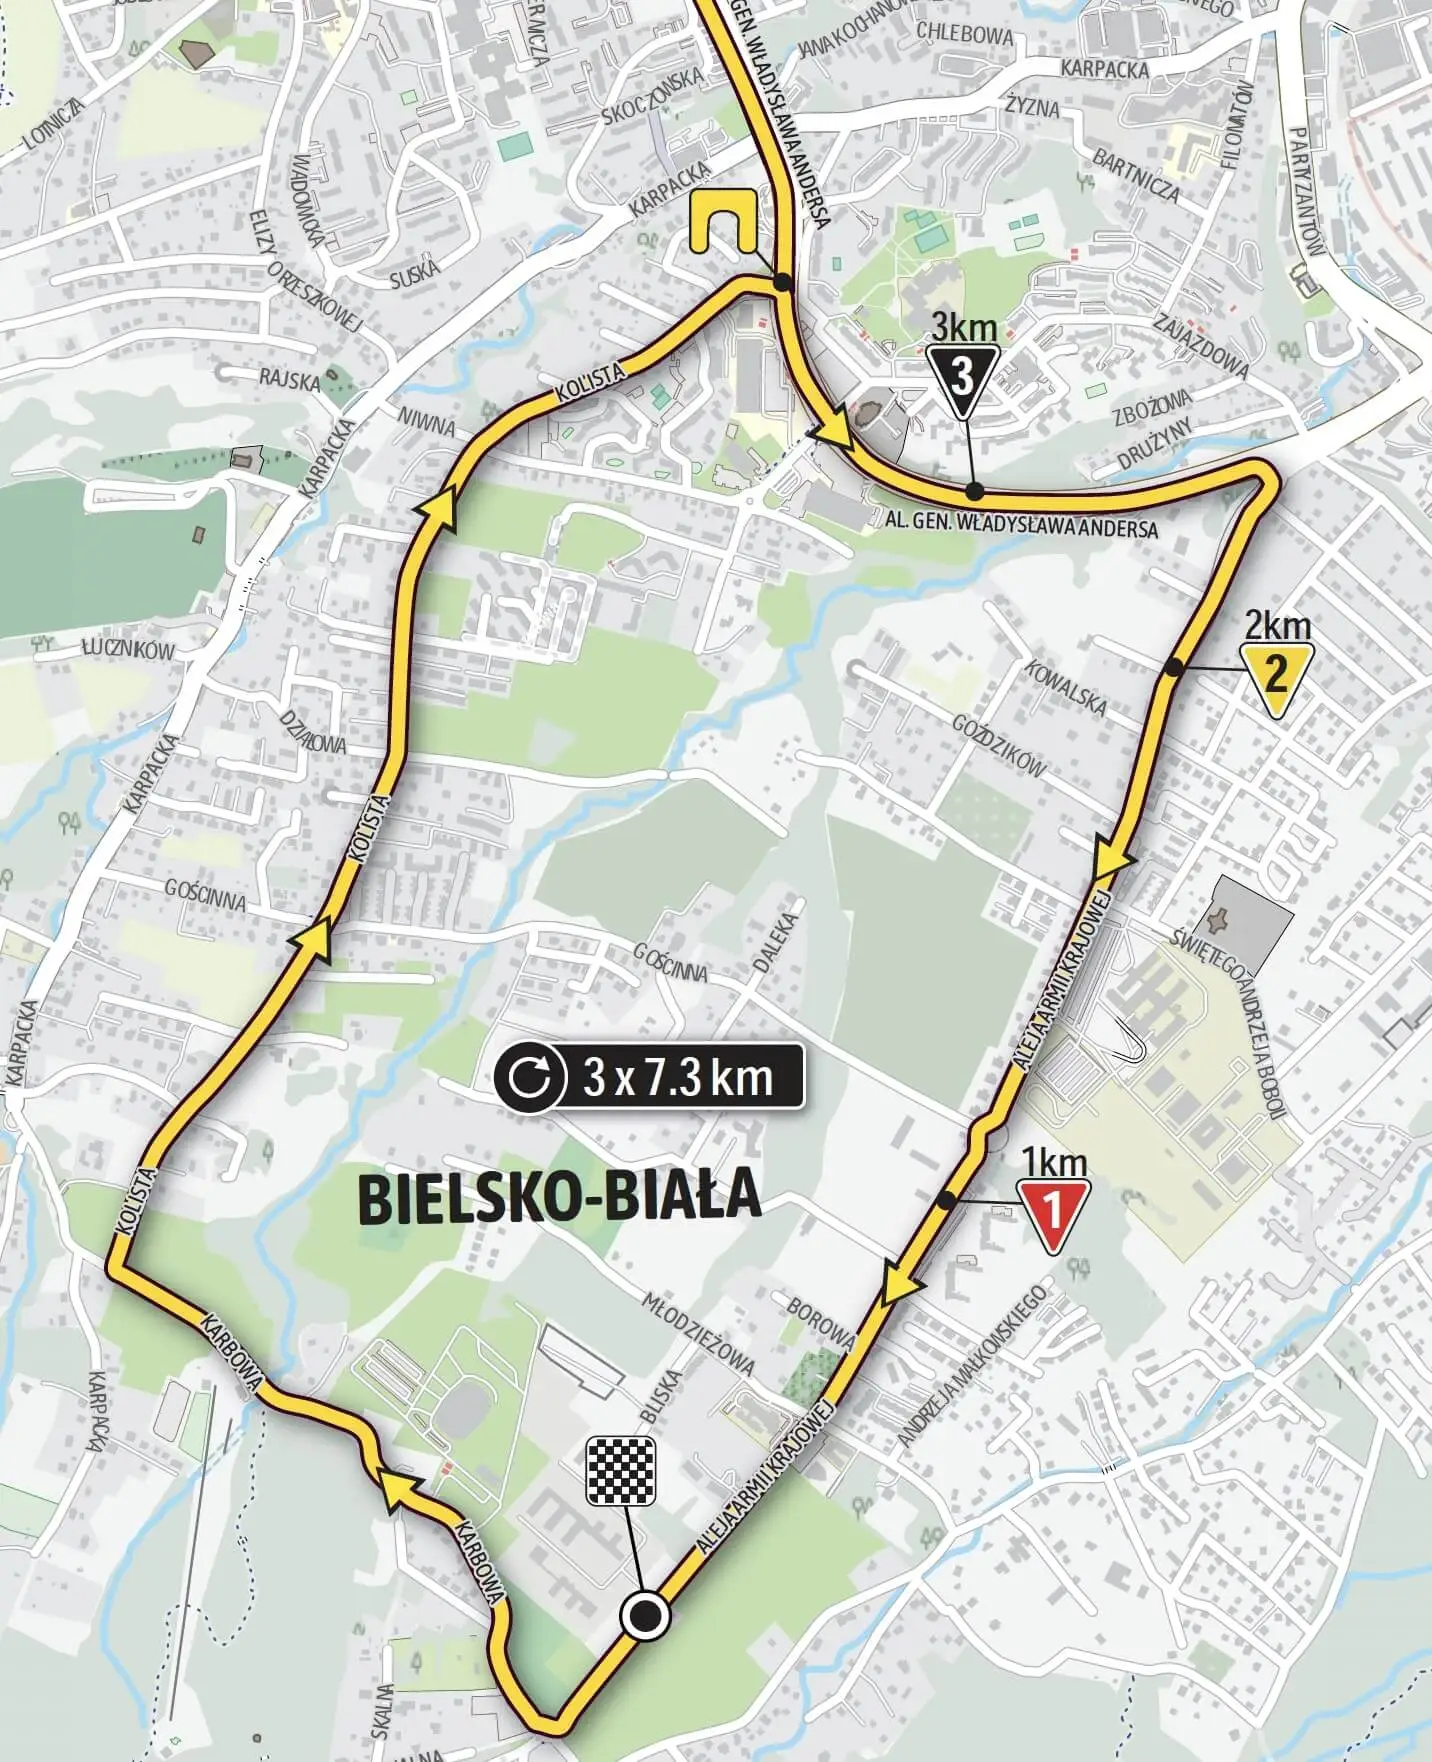 Bielsko Biała - Meta Tour de Pologne 2021